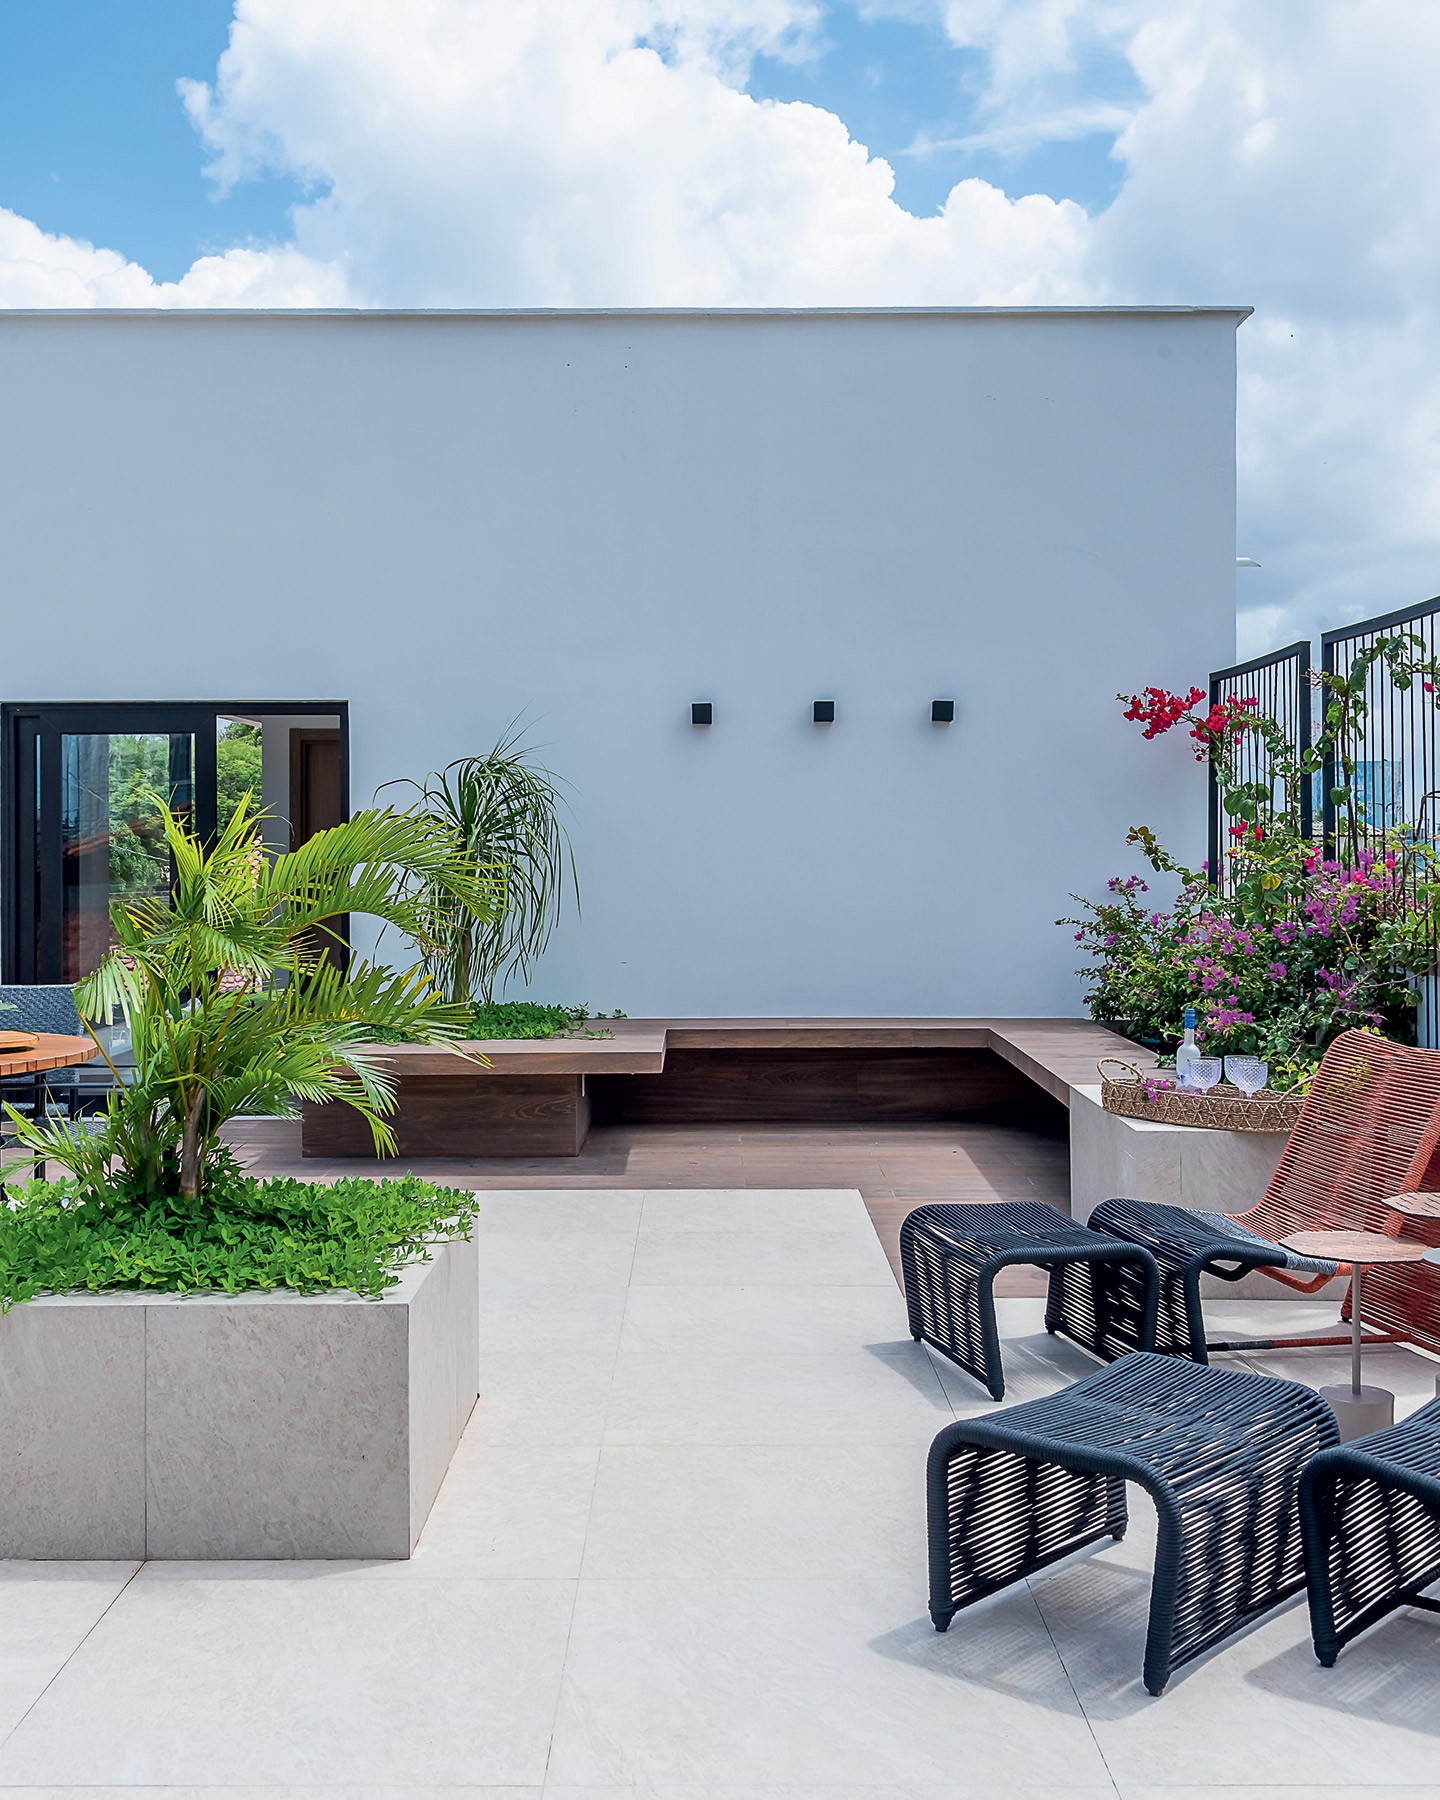 Terraço transforma casa num verdadeiro oásis urbano (Foto: Wesley Diego Emes)